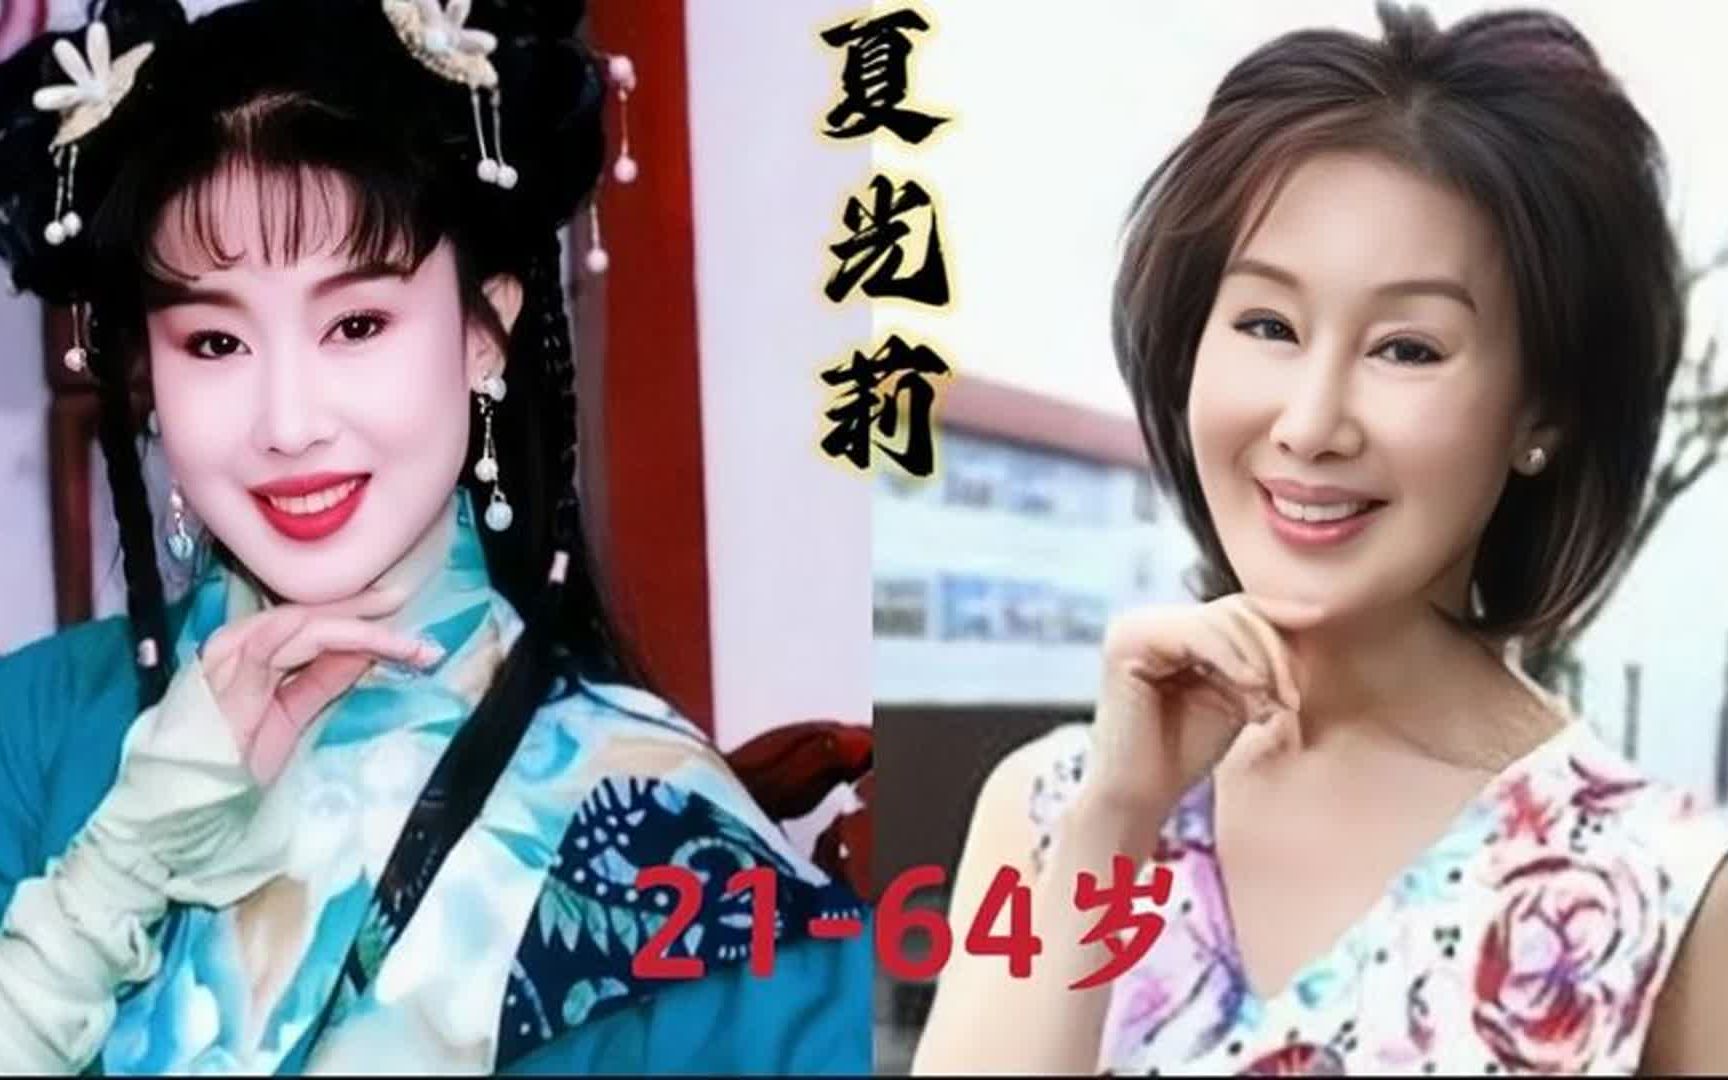 最美碧莲夏光莉21到64岁的变化,曾被誉为台湾第一刀马旦